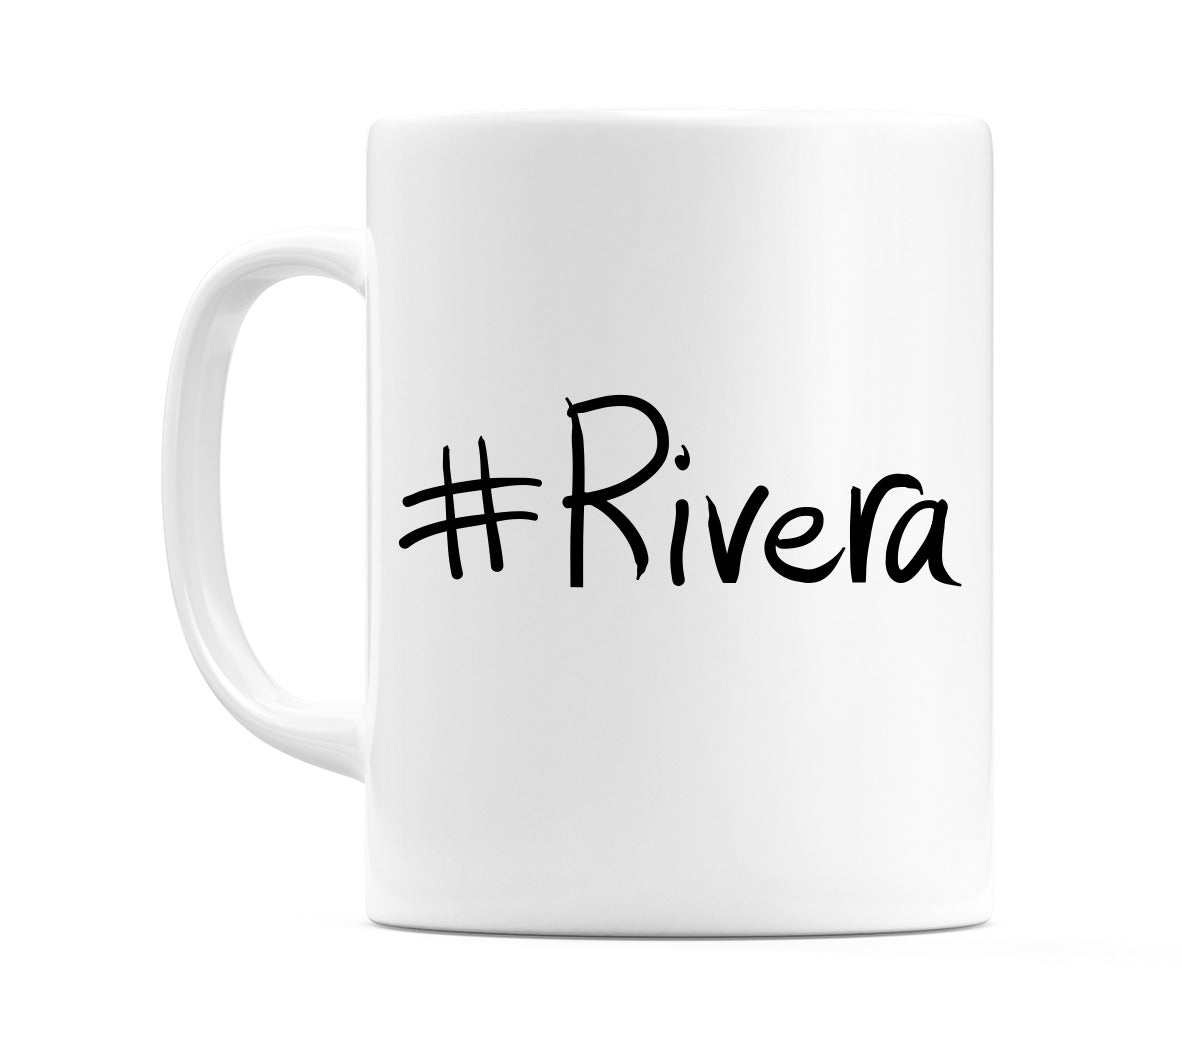 #Rivera Mug